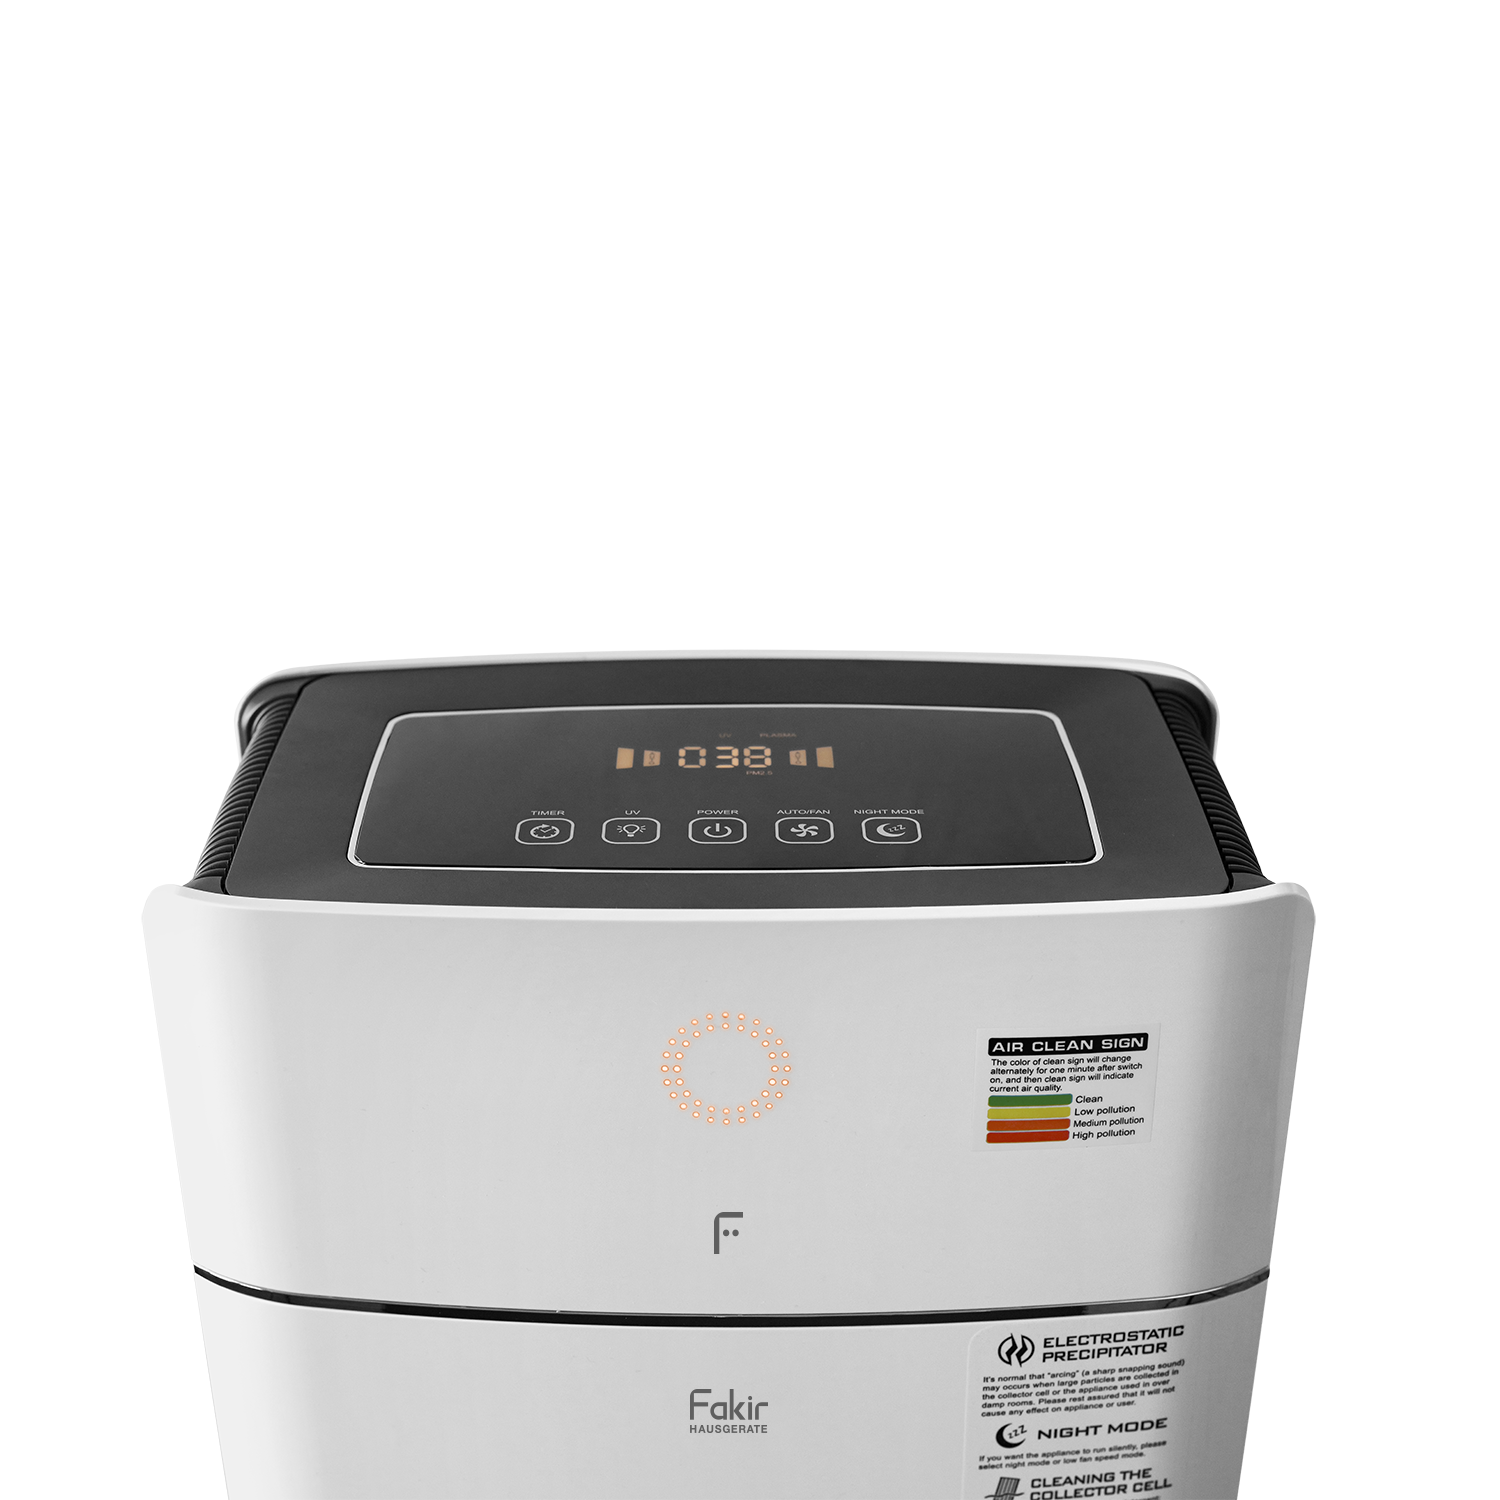 https://fakir.de/fakir-technosphere-smart-air-purifier-with-plasma-filter-technology-white-52-watt-air-quality-3227-12-B.png